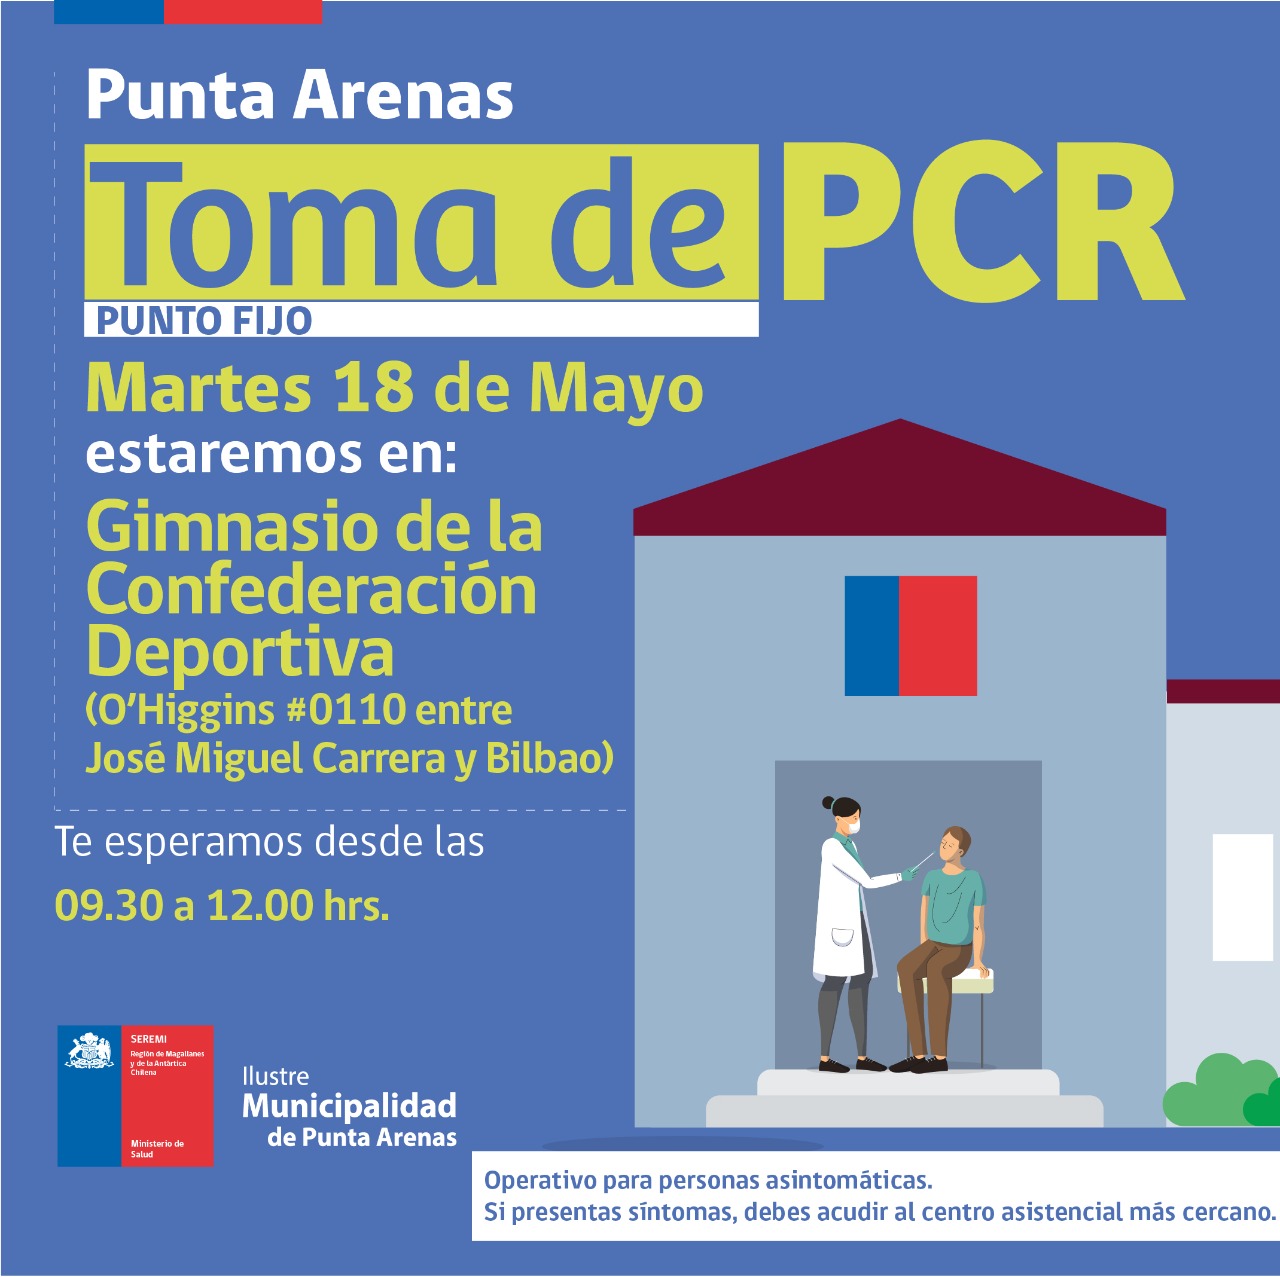 Toma de PCR se efectuará este martes 18 de mayo en Punta Arenas